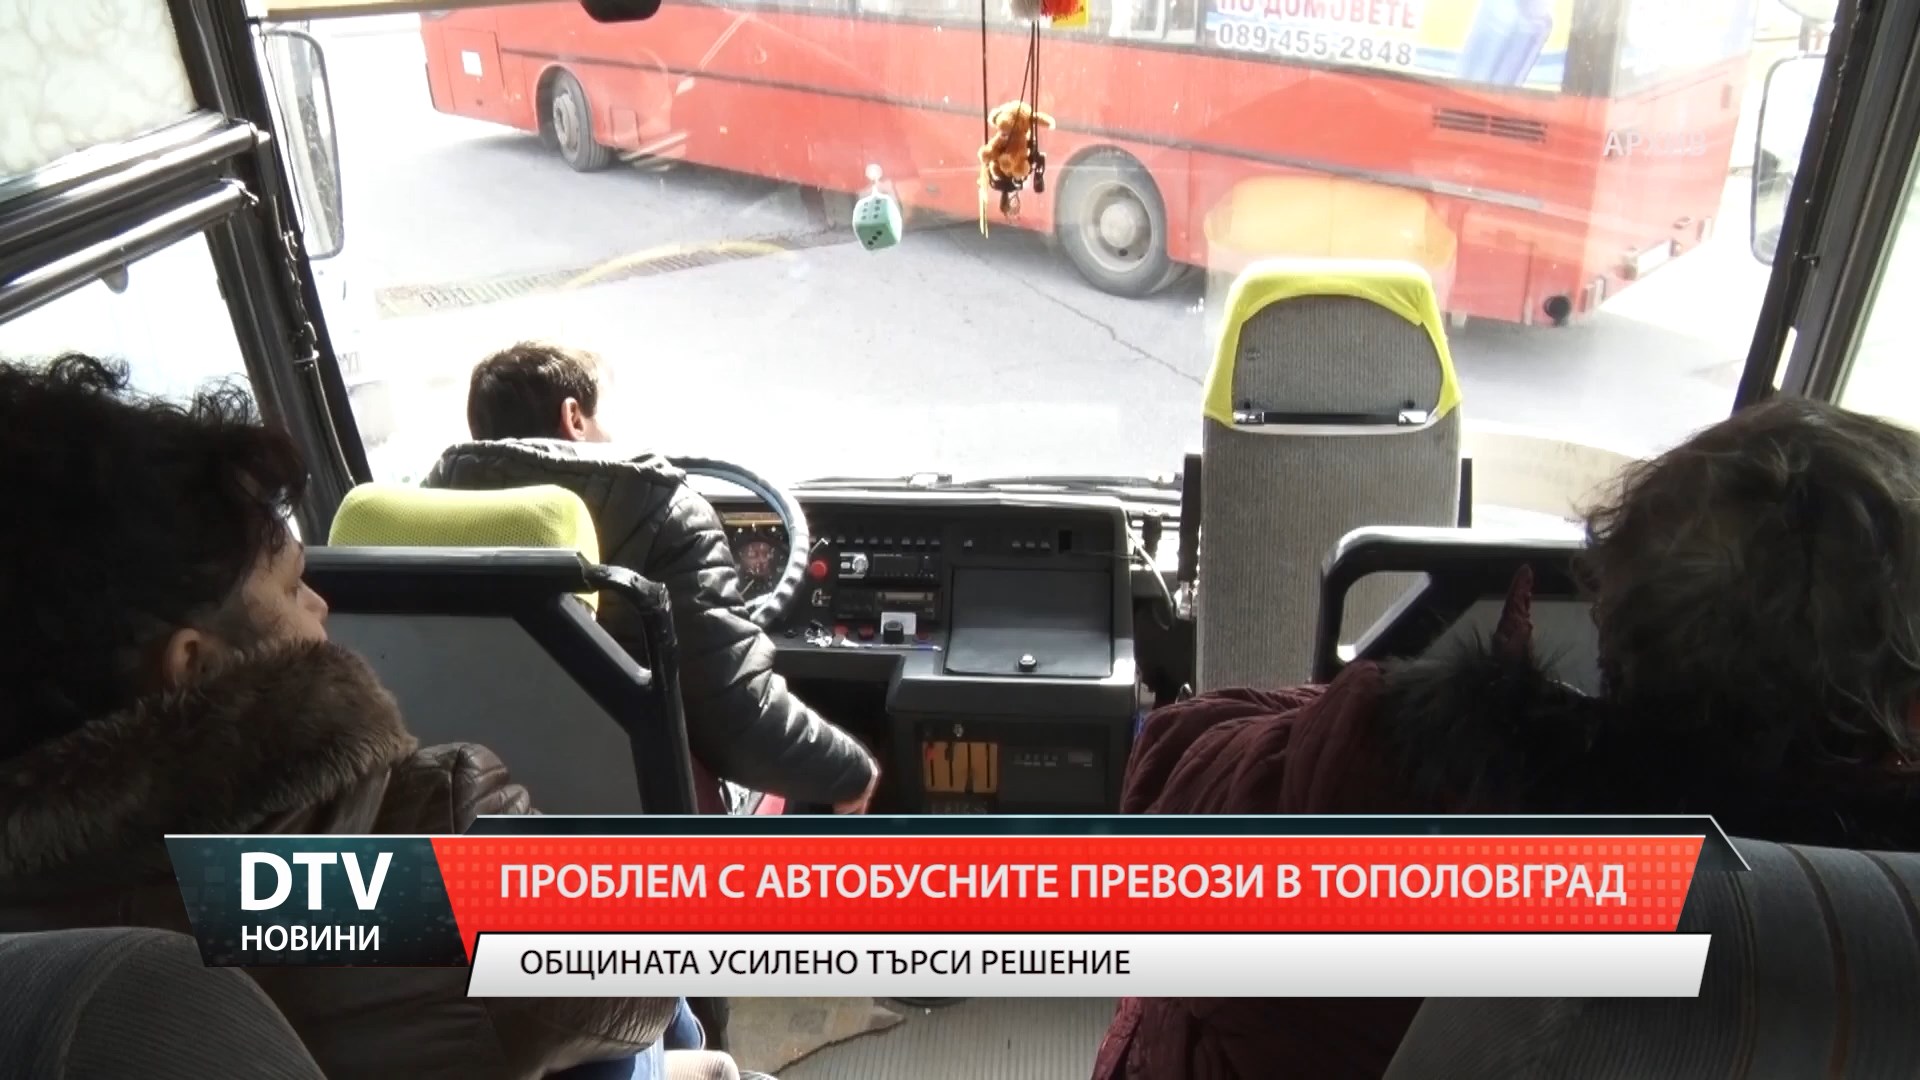 В  Тополовград -сериозни проблеми с автобусните превози.Управата търси решение